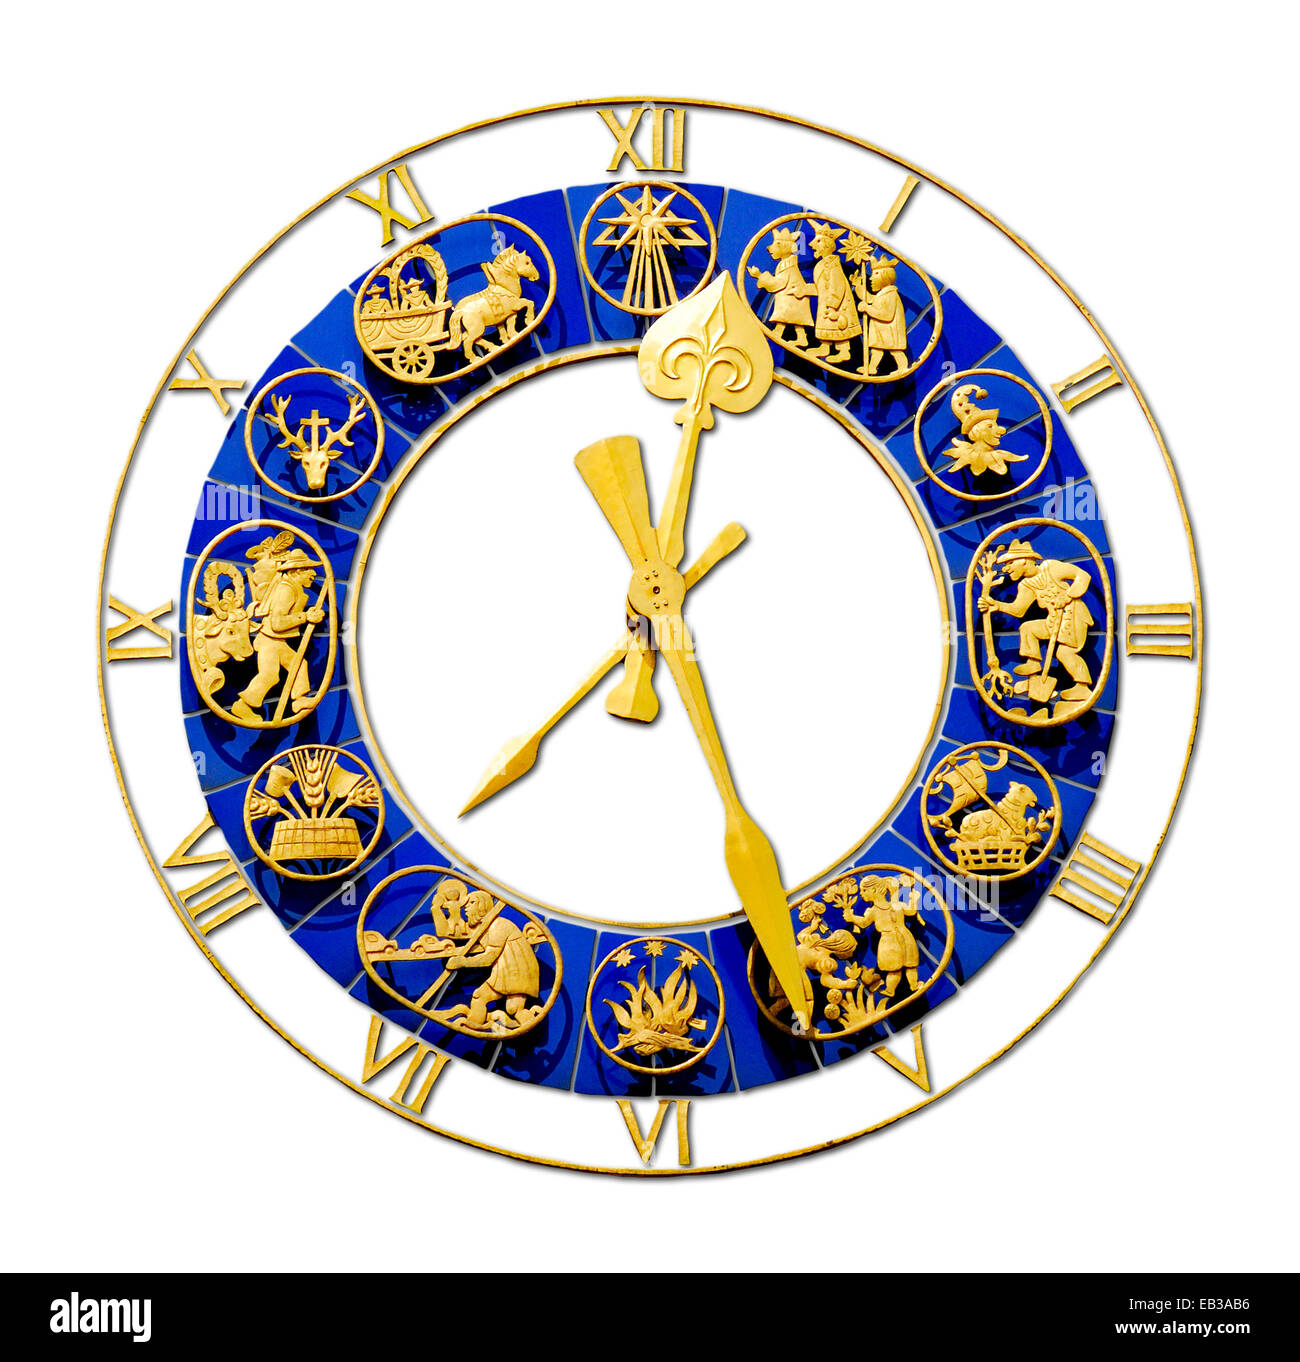 Munich, Bavière, Allemagne. Horloge décorative sur la tour de l'Altes Rathaus / Old Town Hall, la Marienplatz. Découpe numérique Banque D'Images